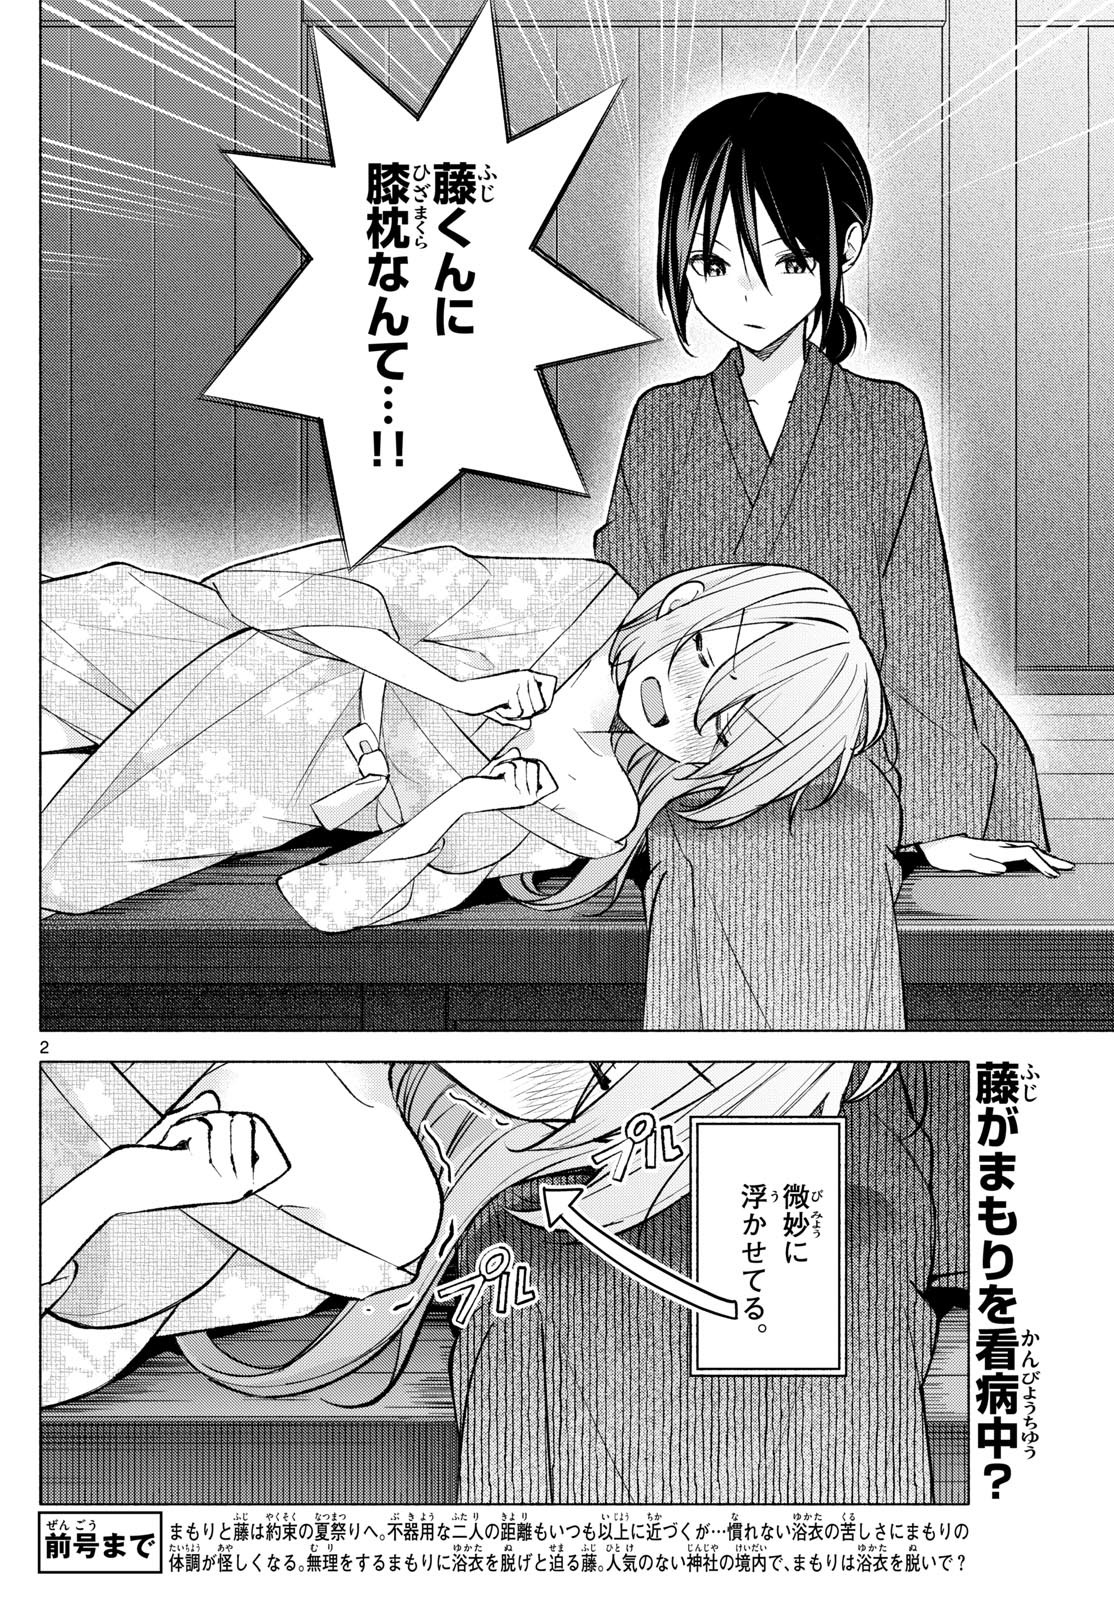 Kimi to Warui Koto ga Shitai - Chapter 049 - Page 2